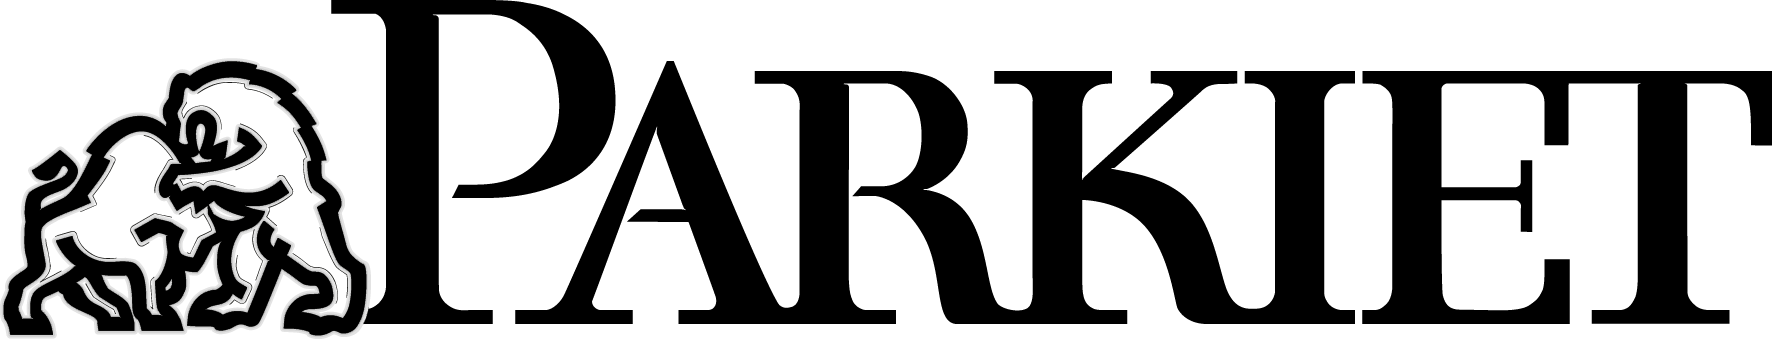 Parkiet Logo